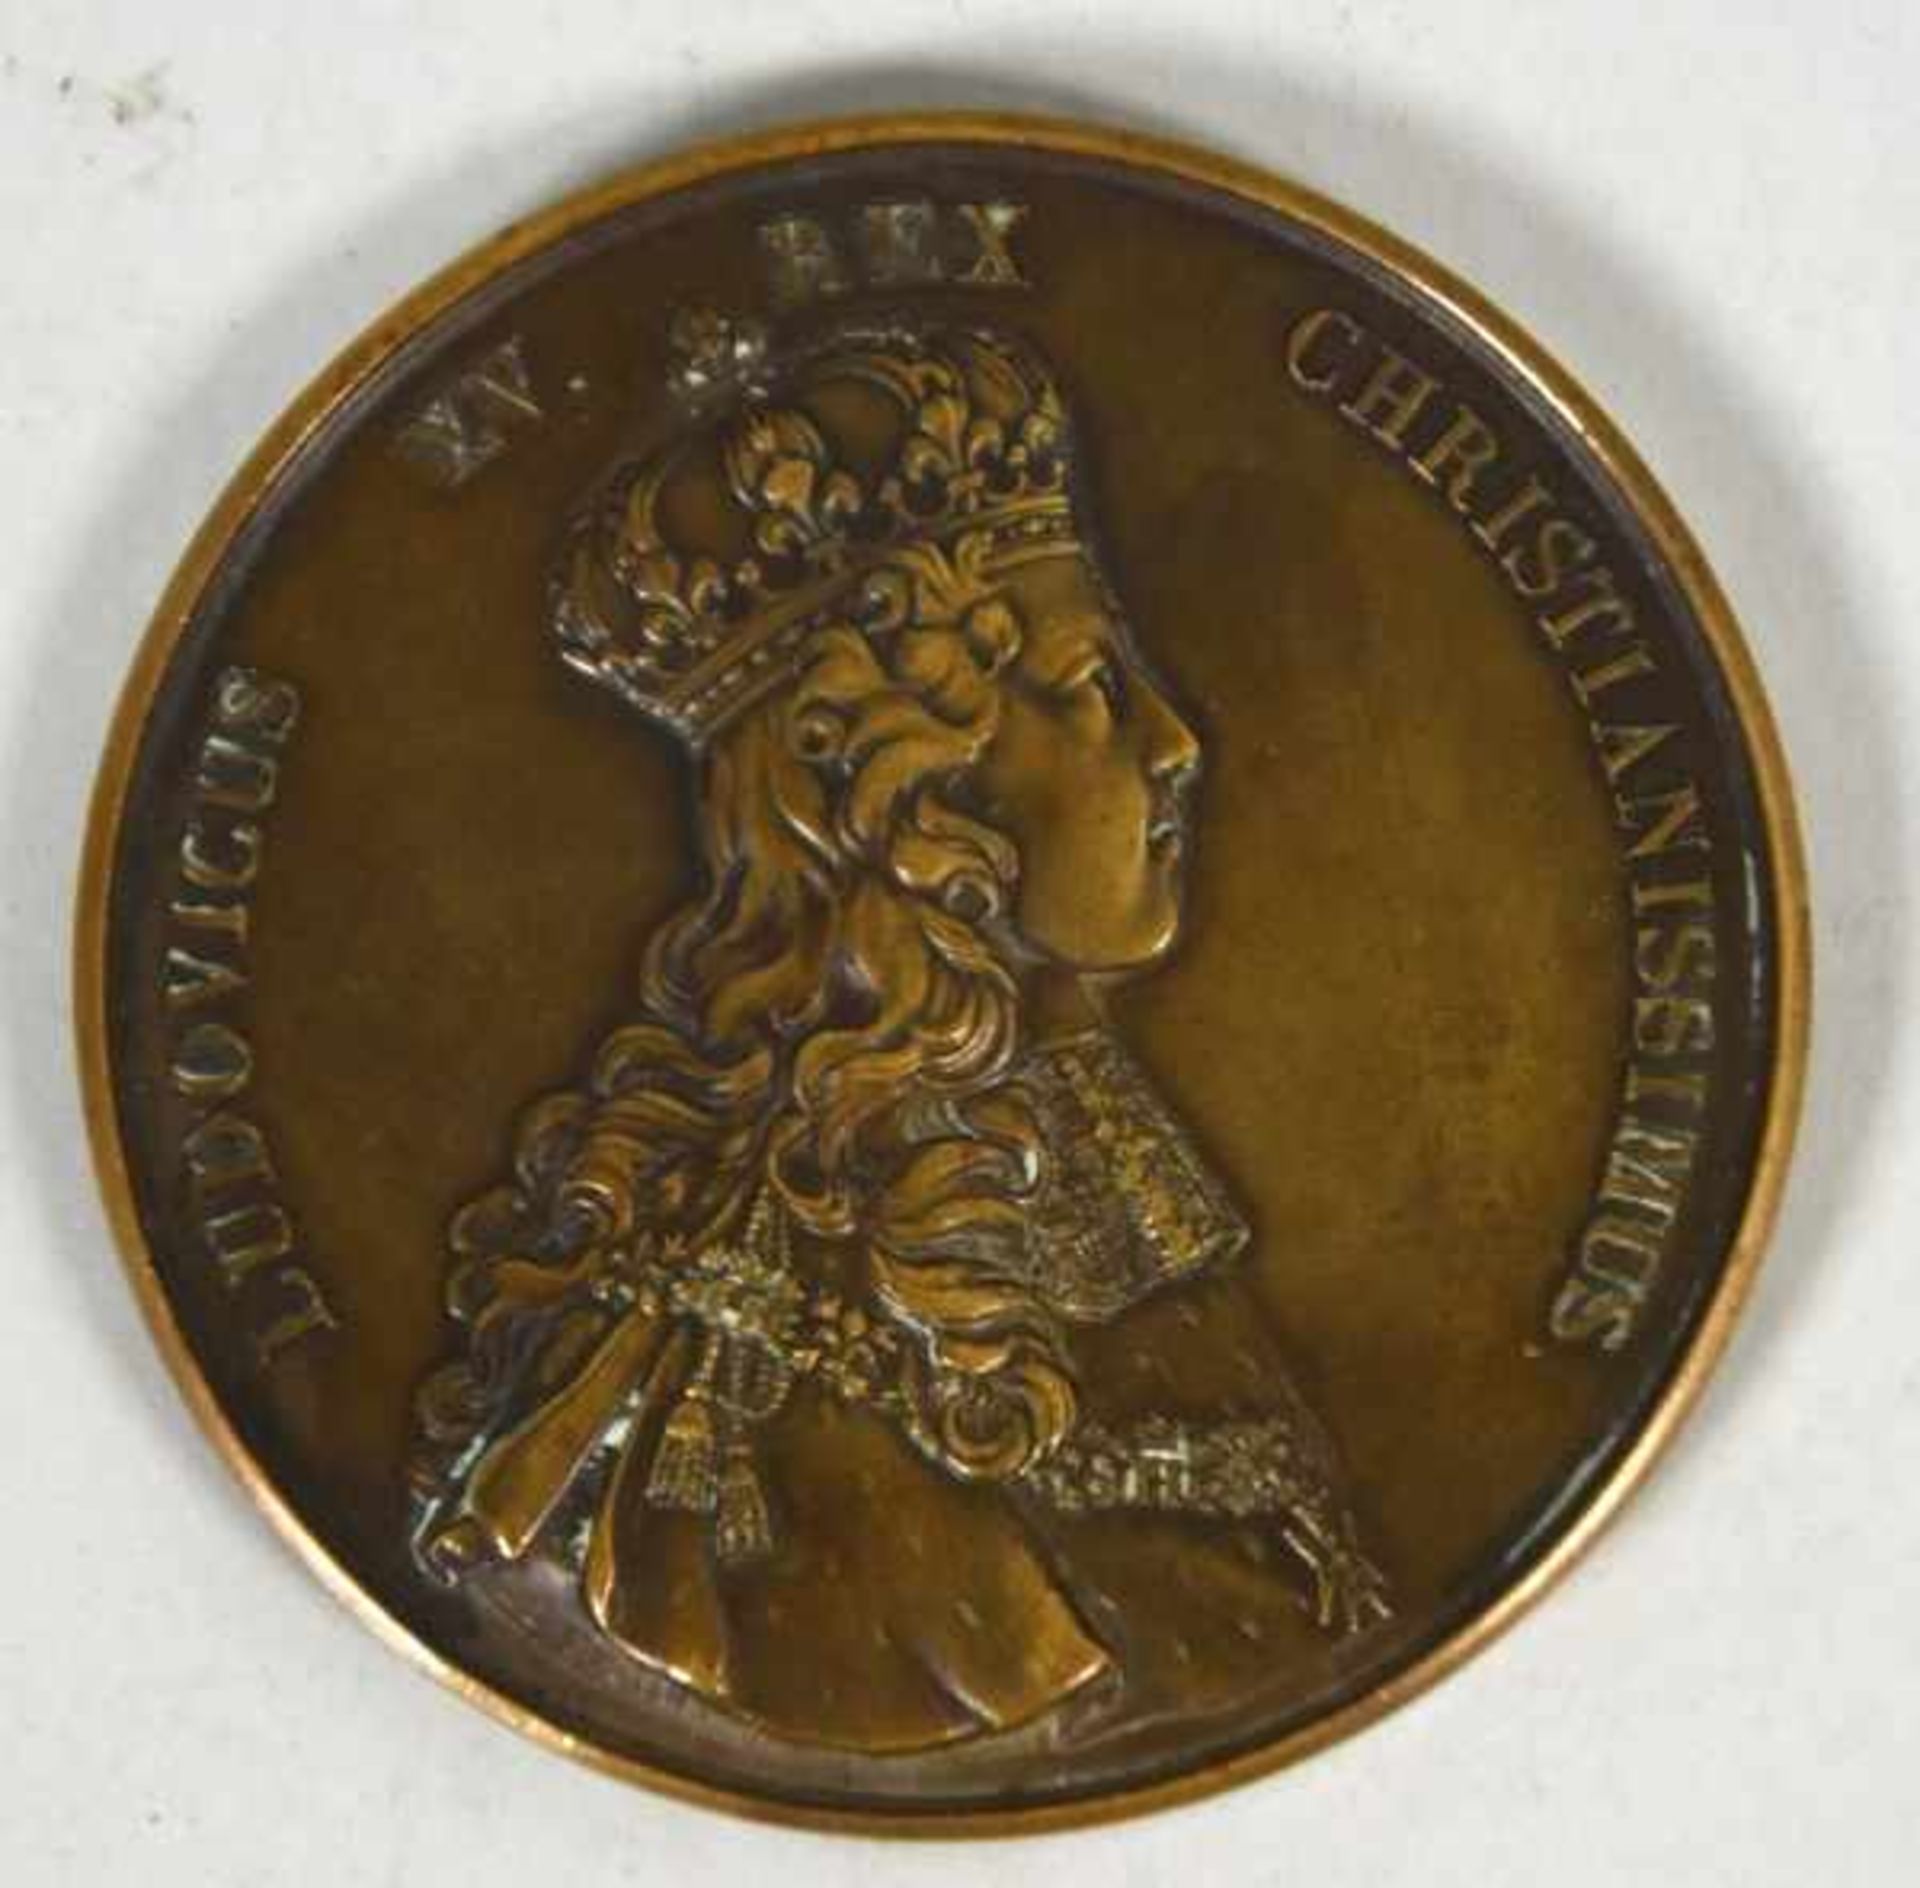 MEDAILLE Bronze "Ludovicus XV. Rex Christianissimus", rückseitig Darstellung der Krönung, D 75mm - Bild 2 aus 2